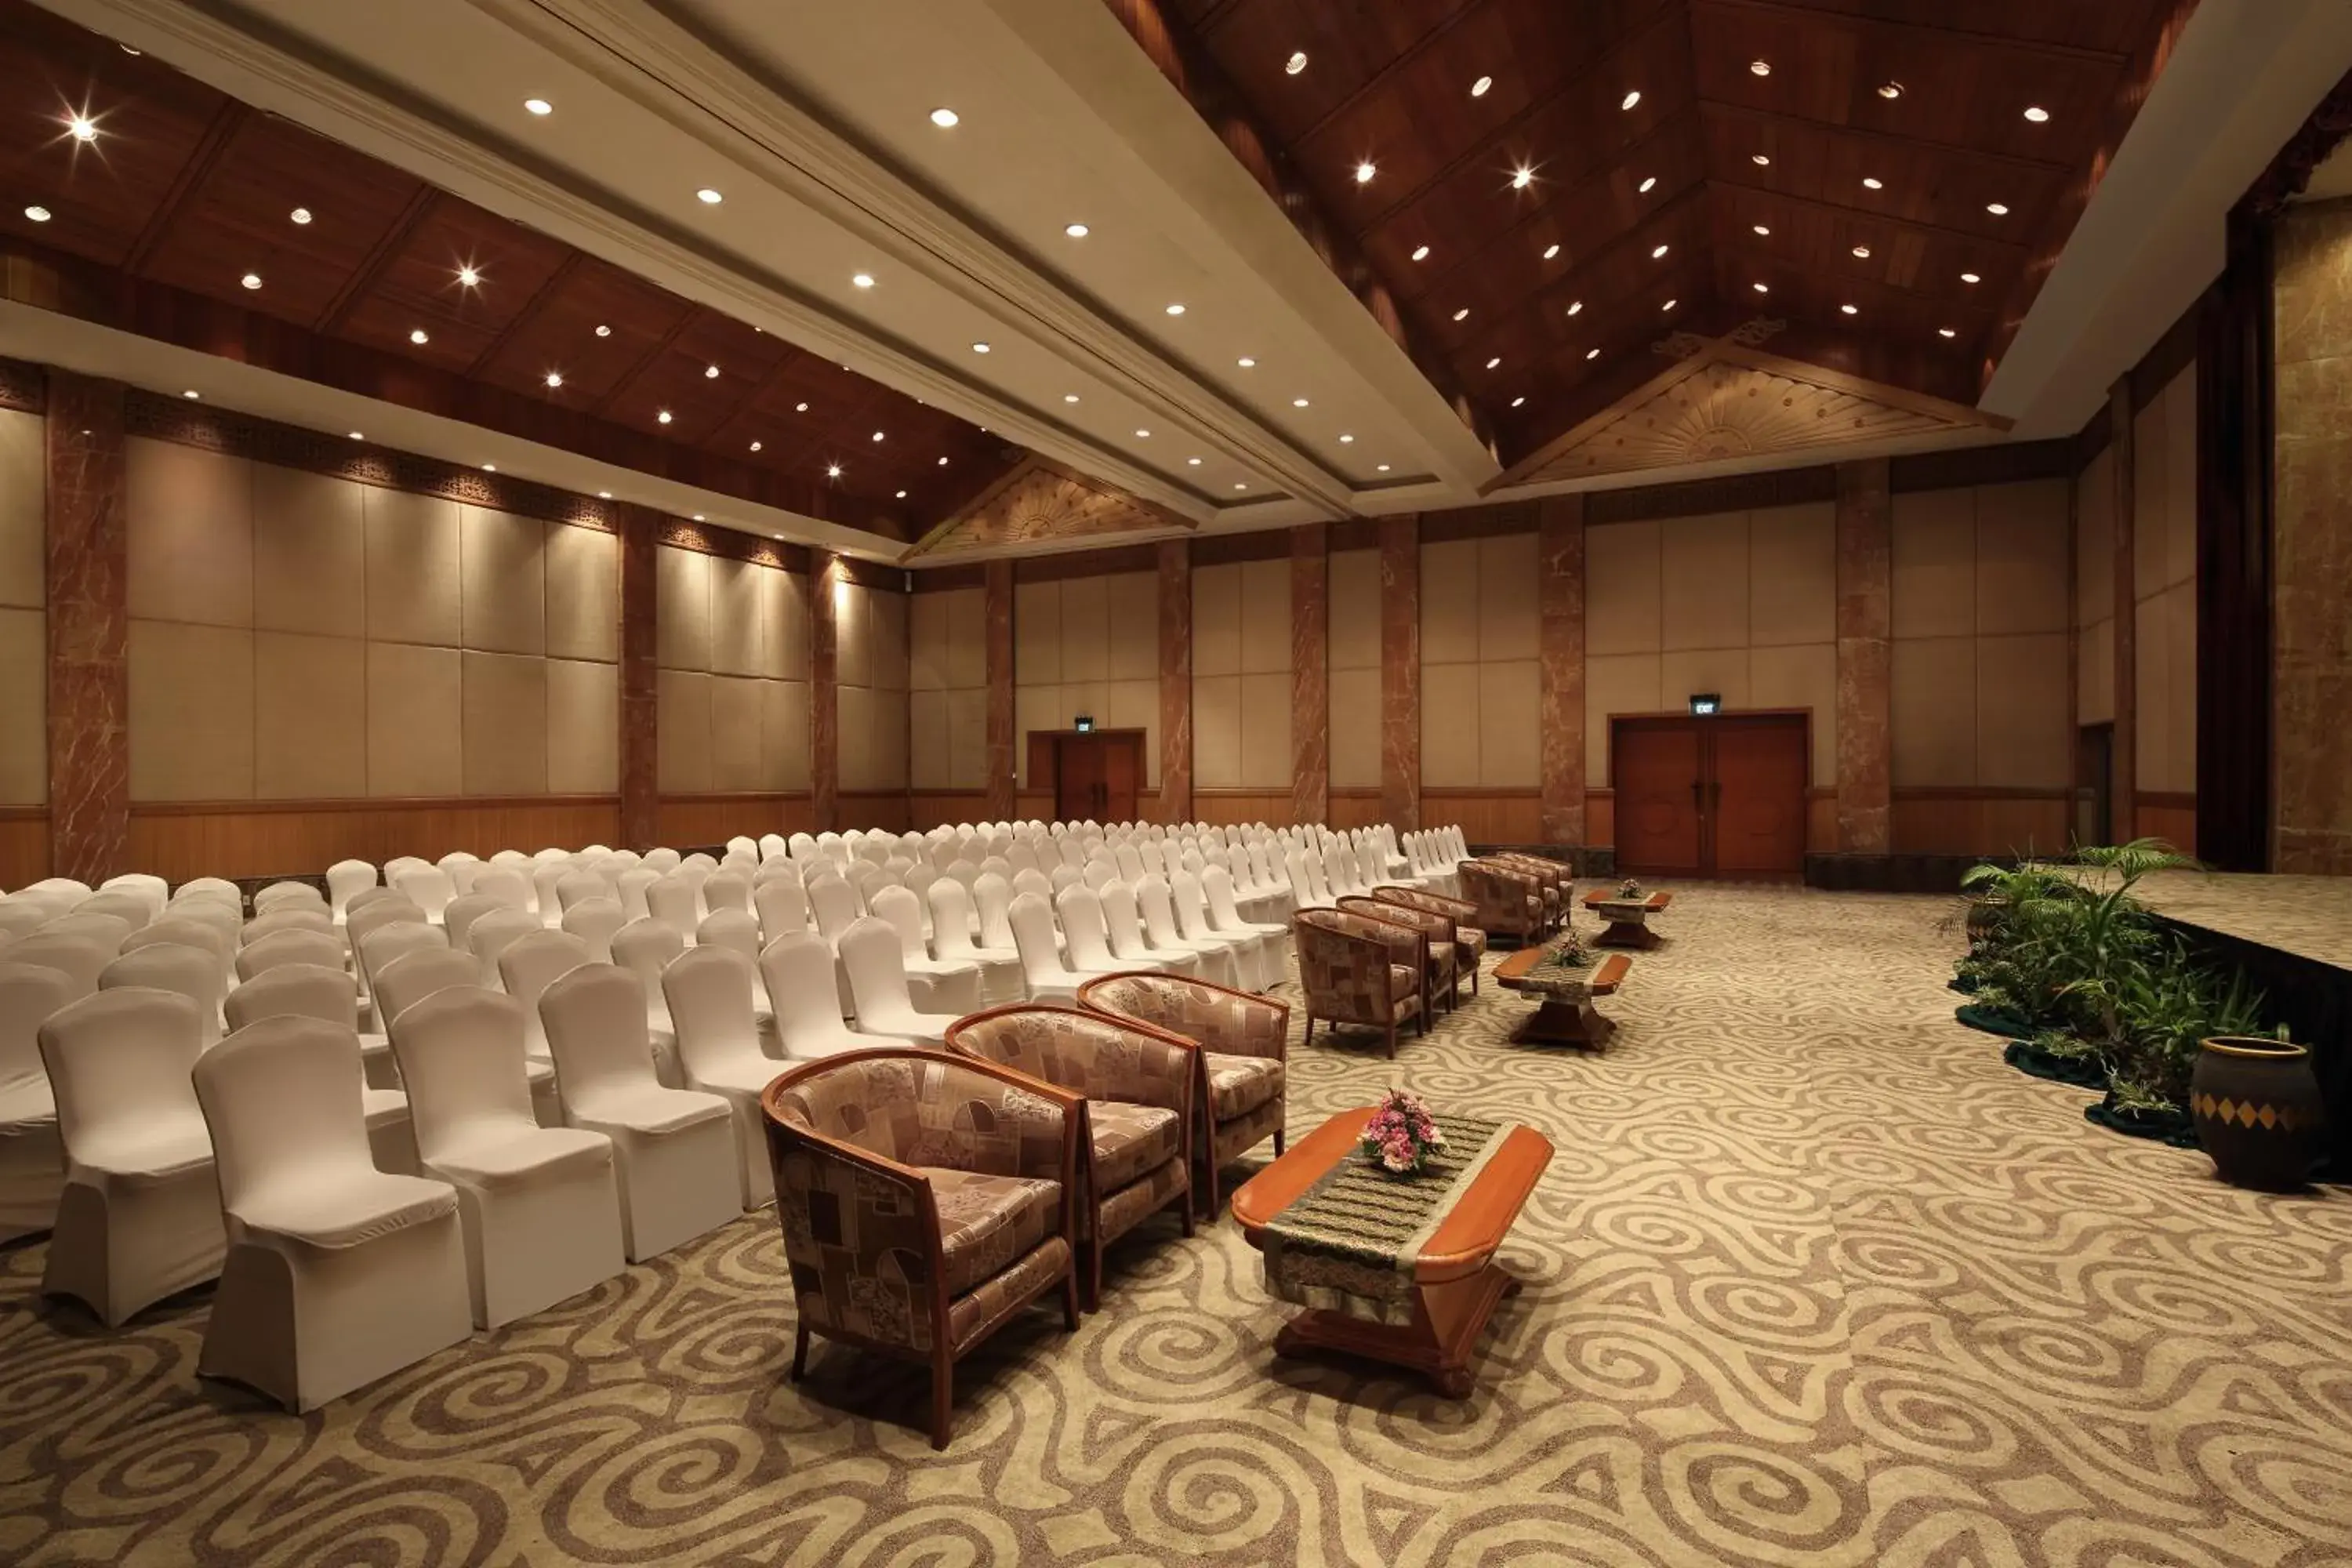 Banquet/Function facilities in Hotel Aryaduta Pekanbaru